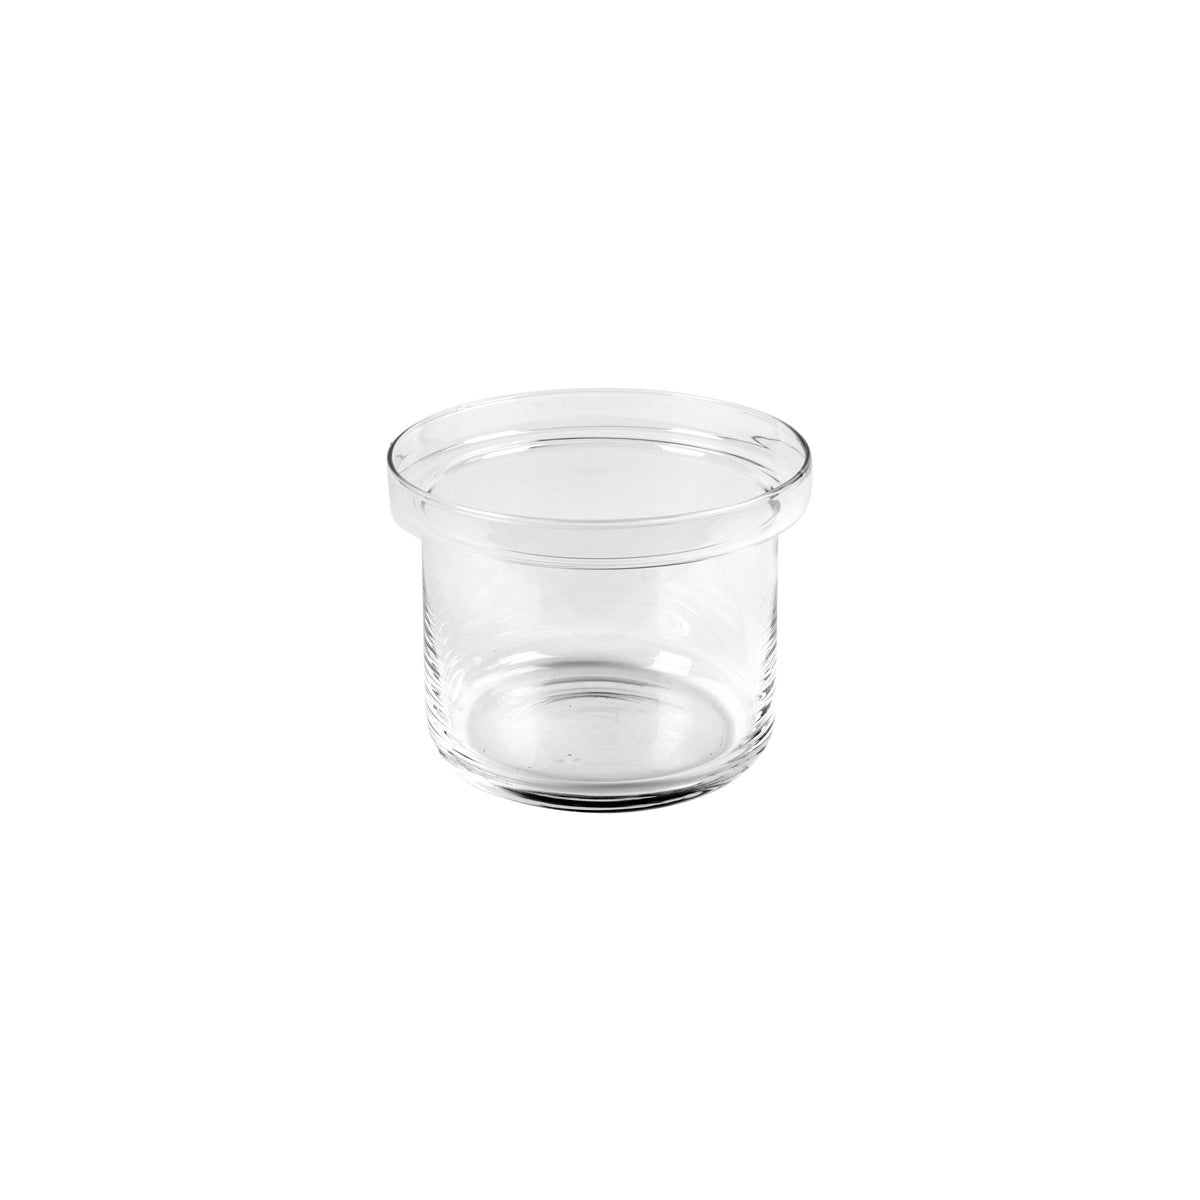 CRASTERBUGJ001 Craster Craster Tilt Glass Jar Large 218x165mm / 3Lt Tomkin Australia Hospitality Supplies